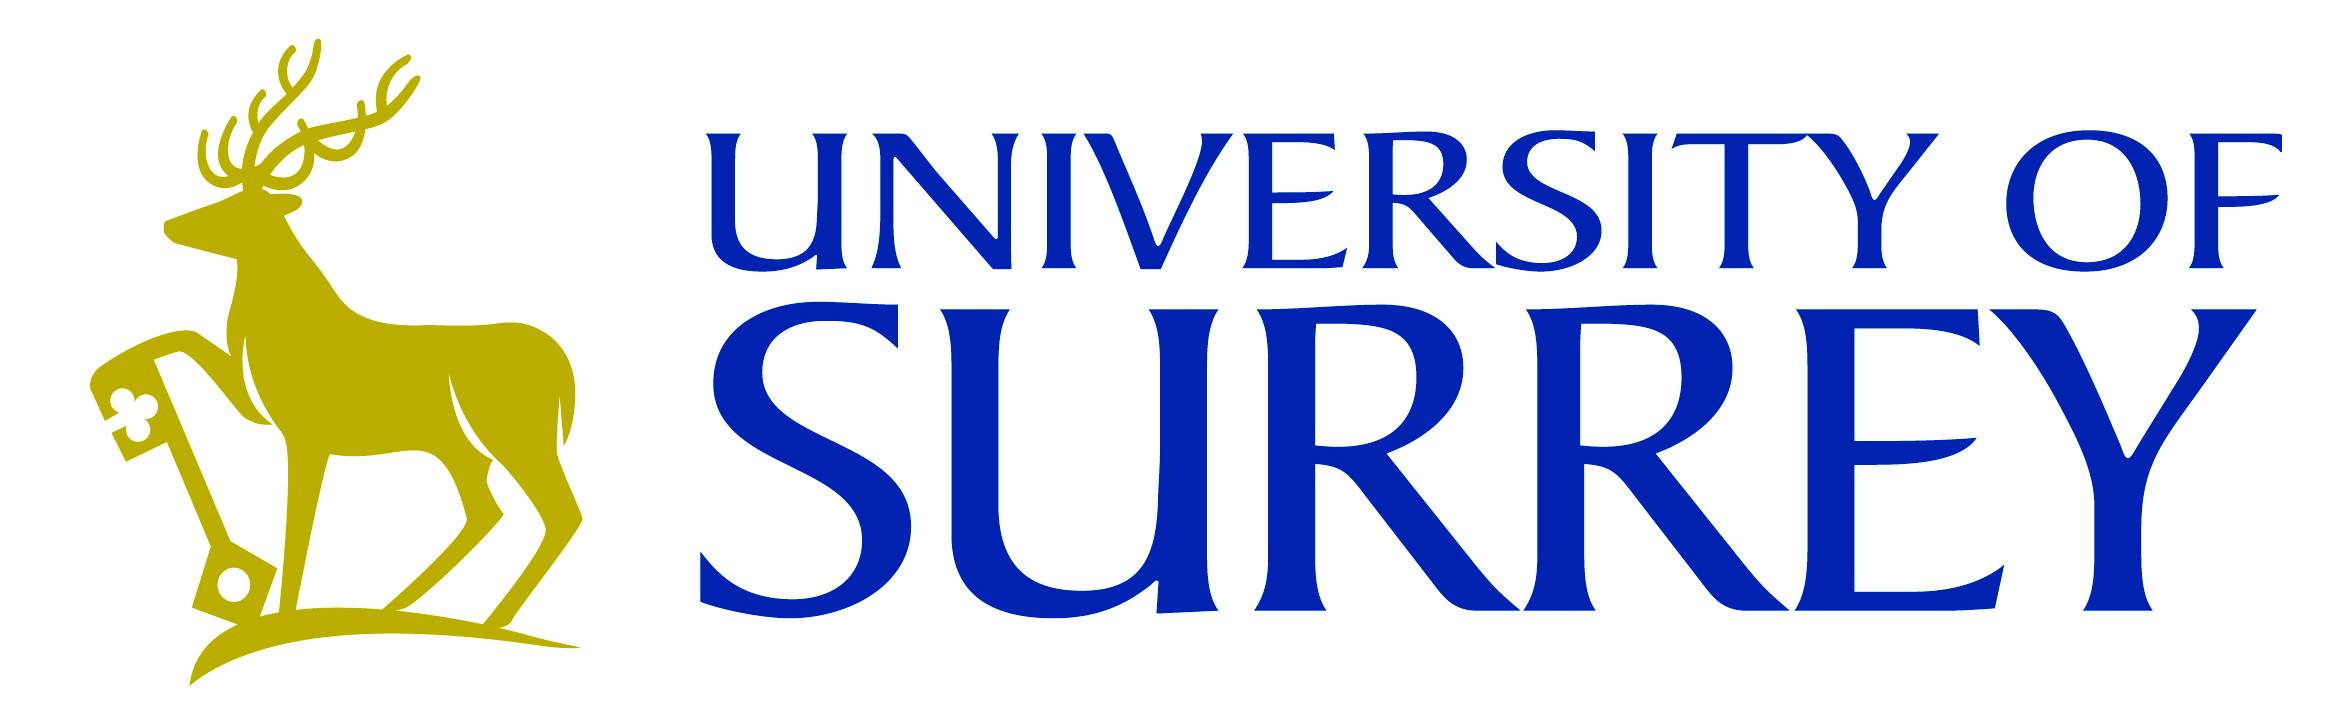 University of Surrey Veterinarian School 